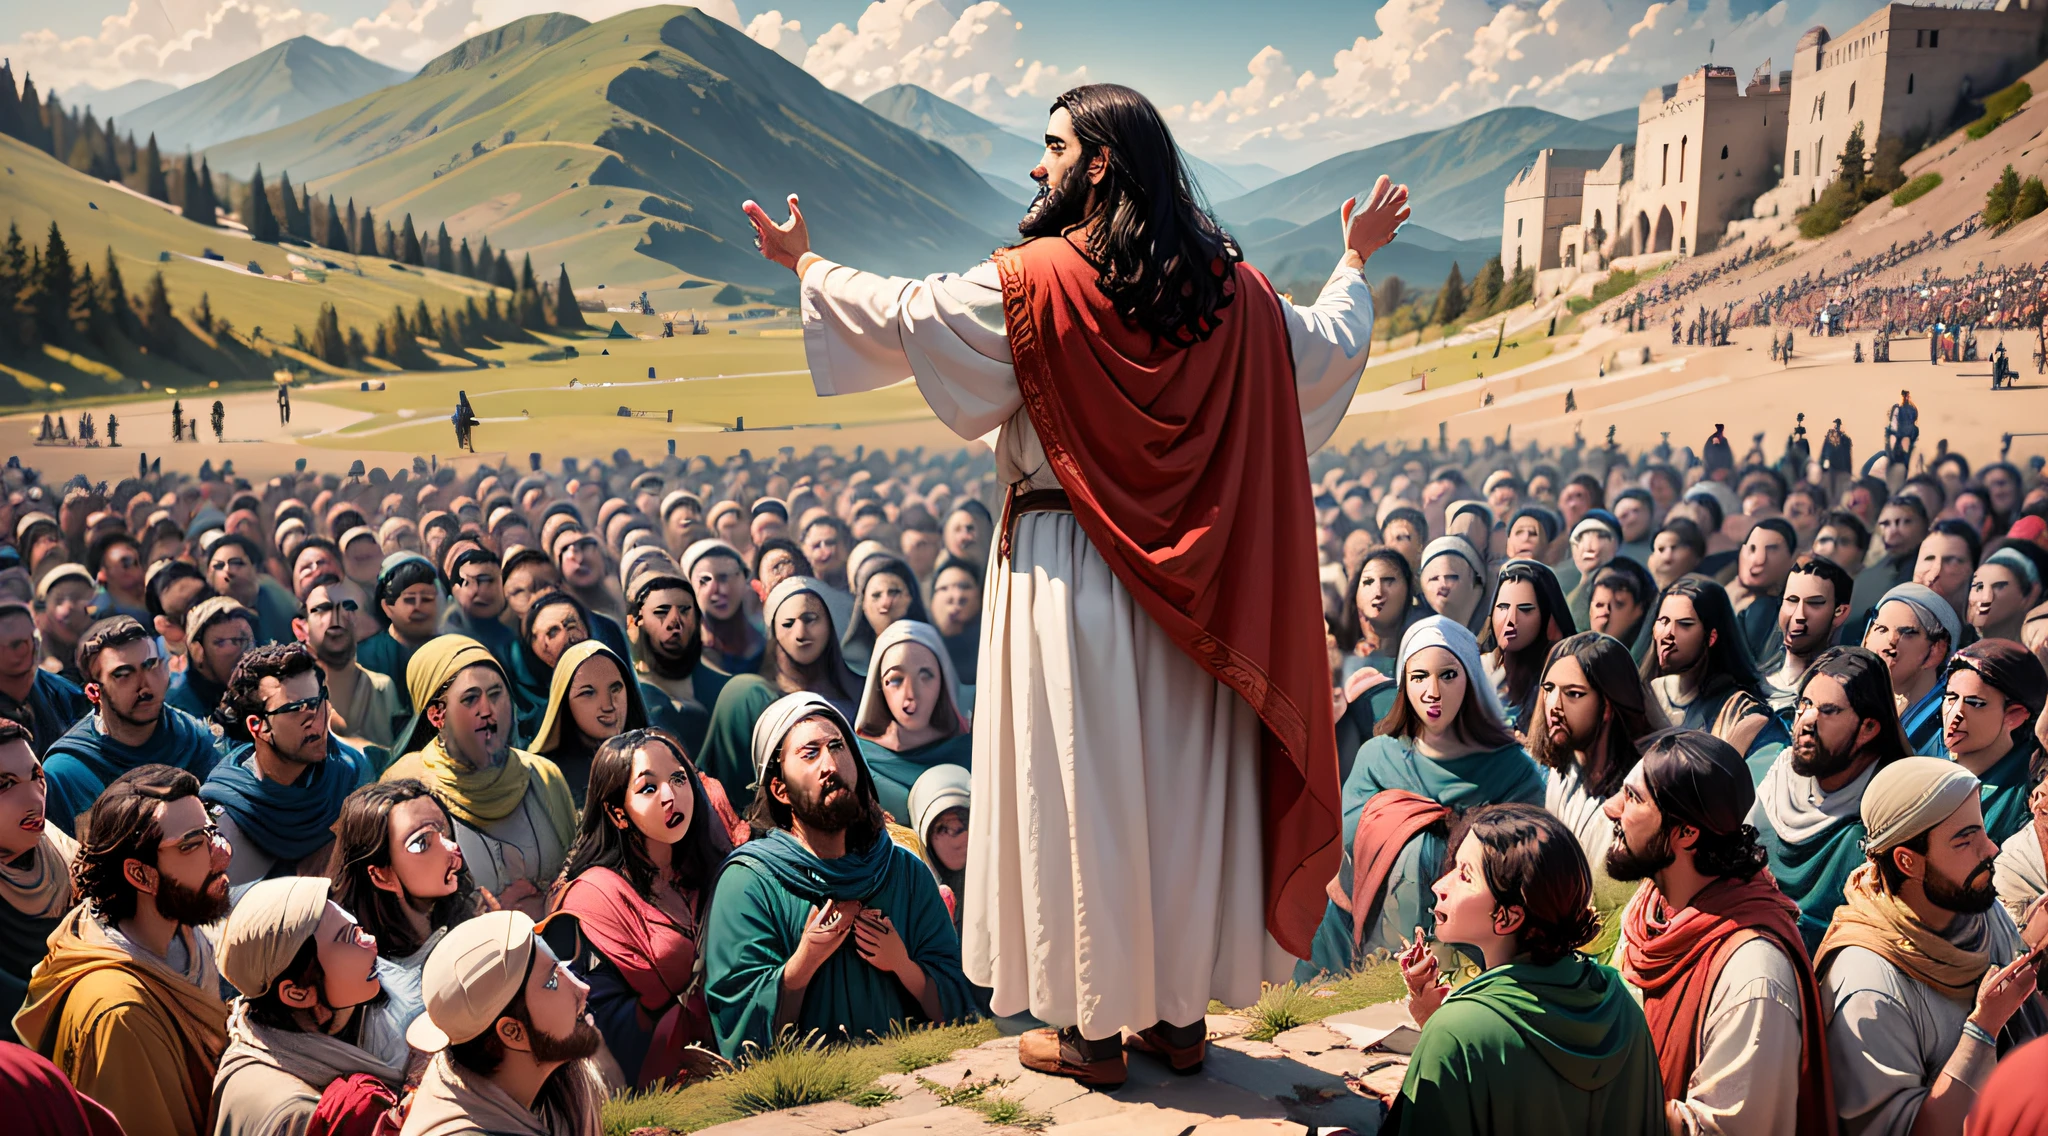 Escena que muestra a Jesús pronunciando el Sermón del Monte, rodeado de una multitud de personas.